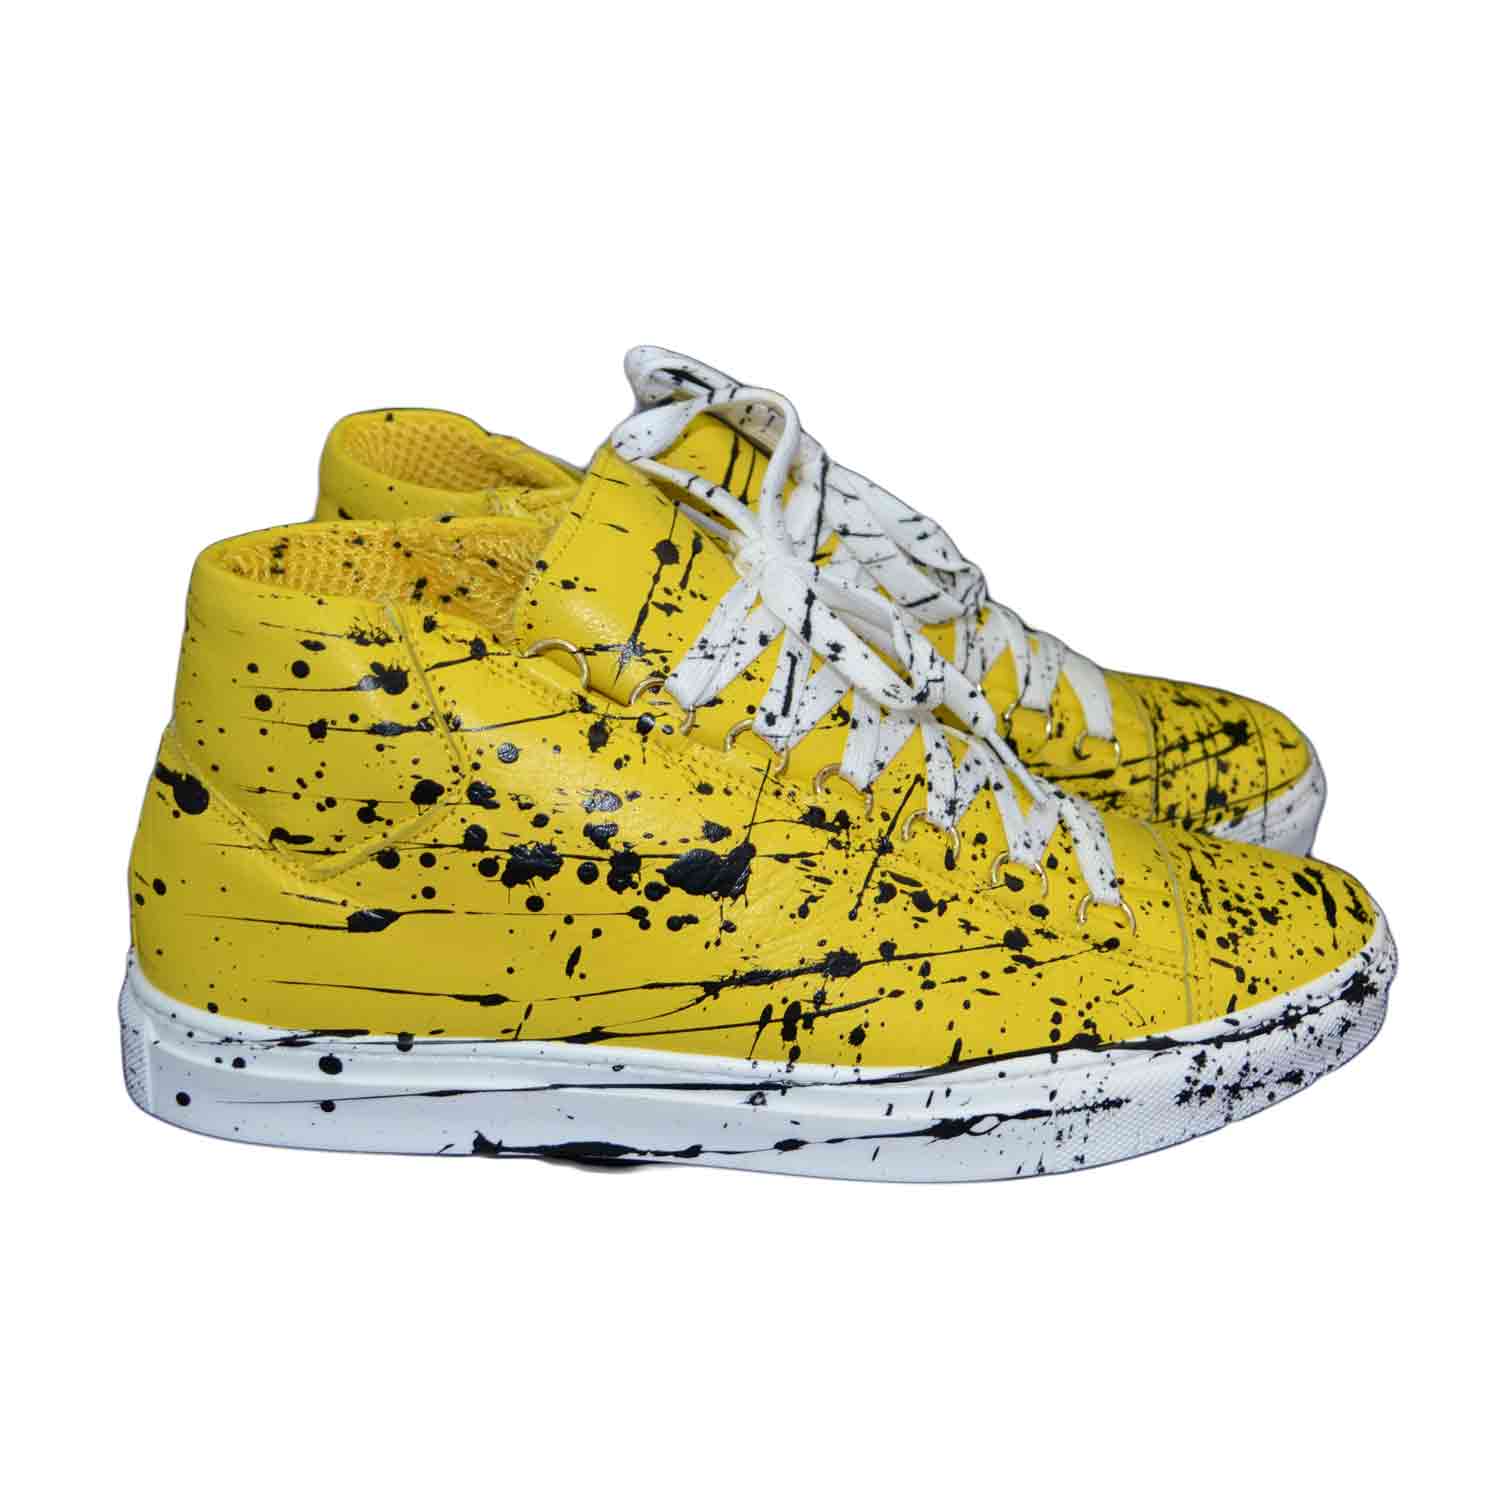 Sneakers uomo scarpe in vera pelle giallo con fantasia astratto schizzi limited edition made in Italy.